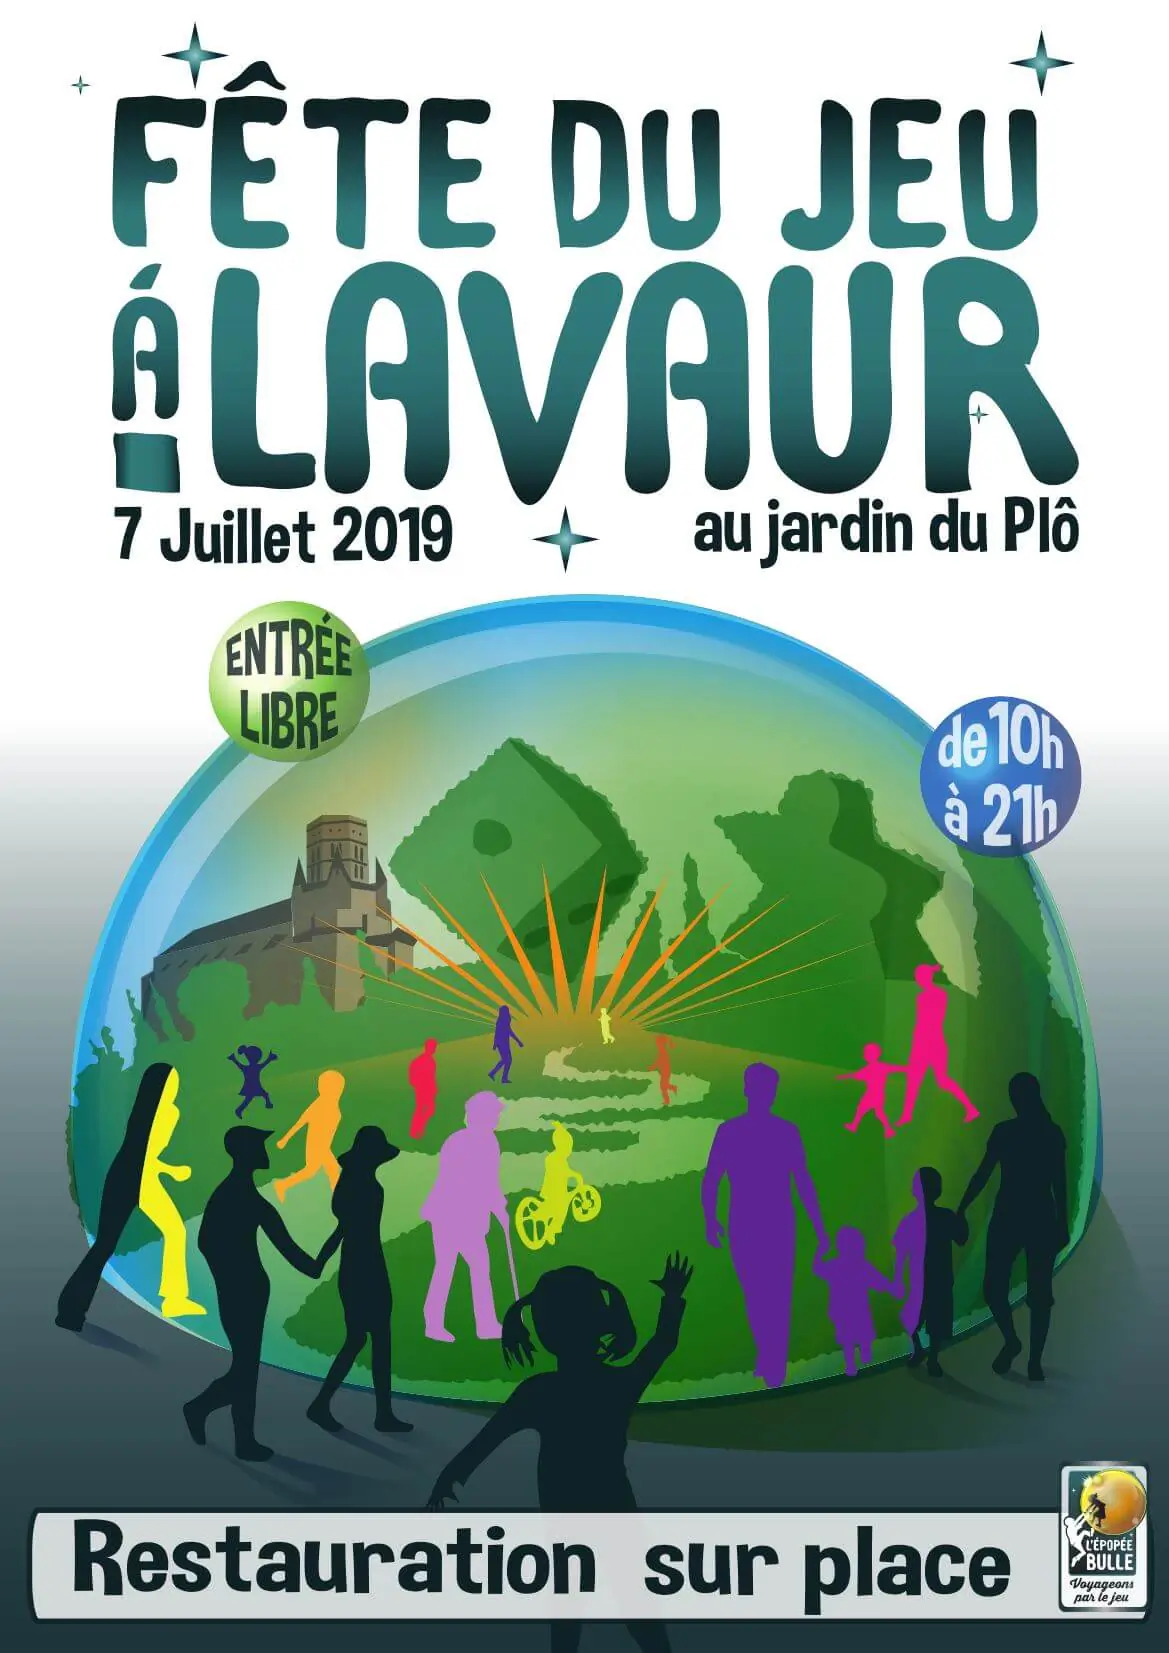 Official poster Fête du jeu à Lavaur 2019